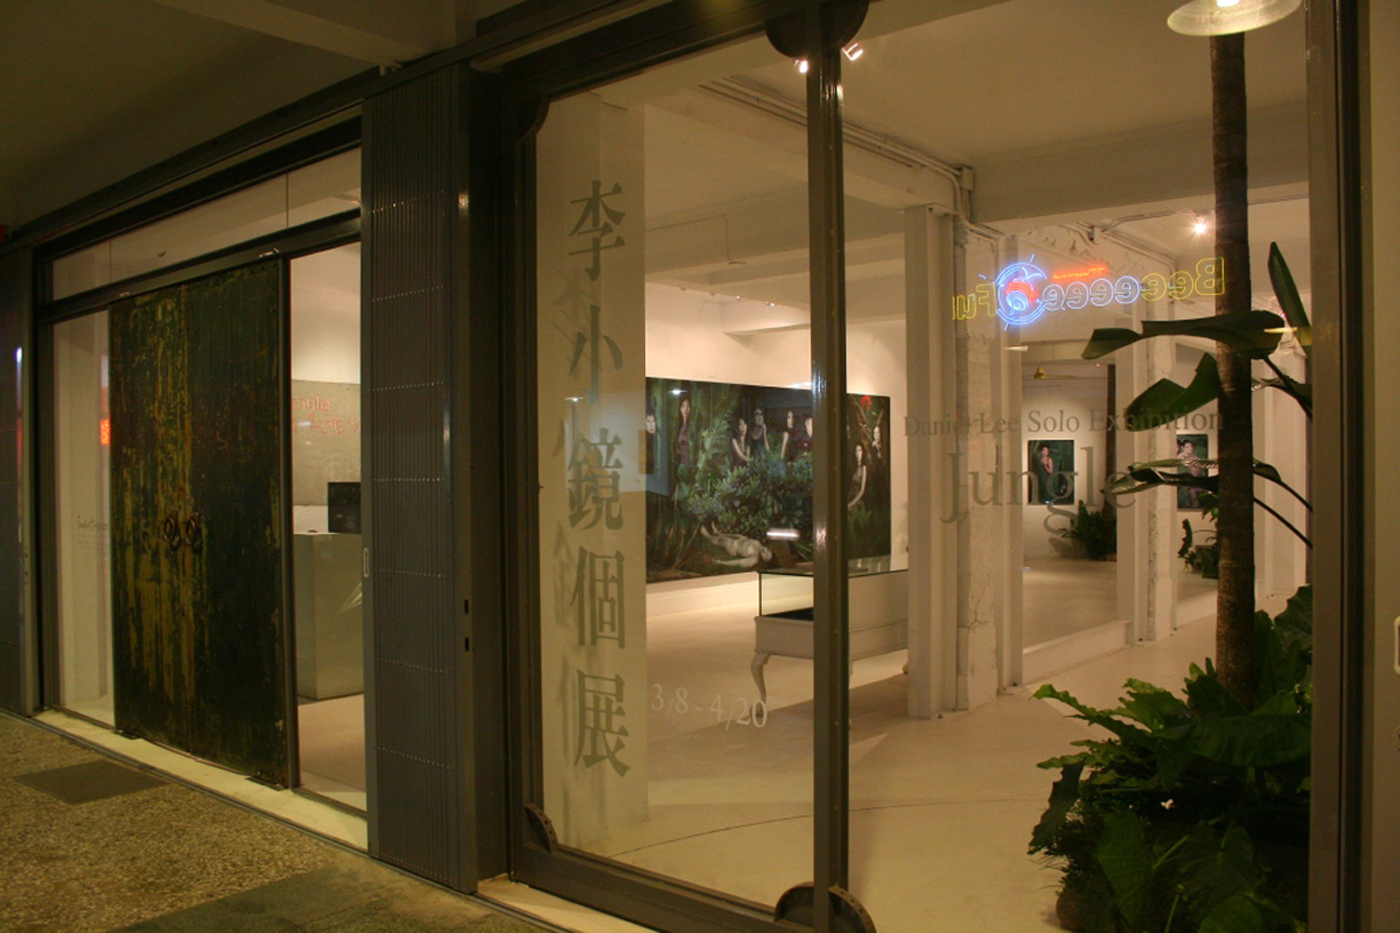 2008 李小鏡展 1F櫥窗